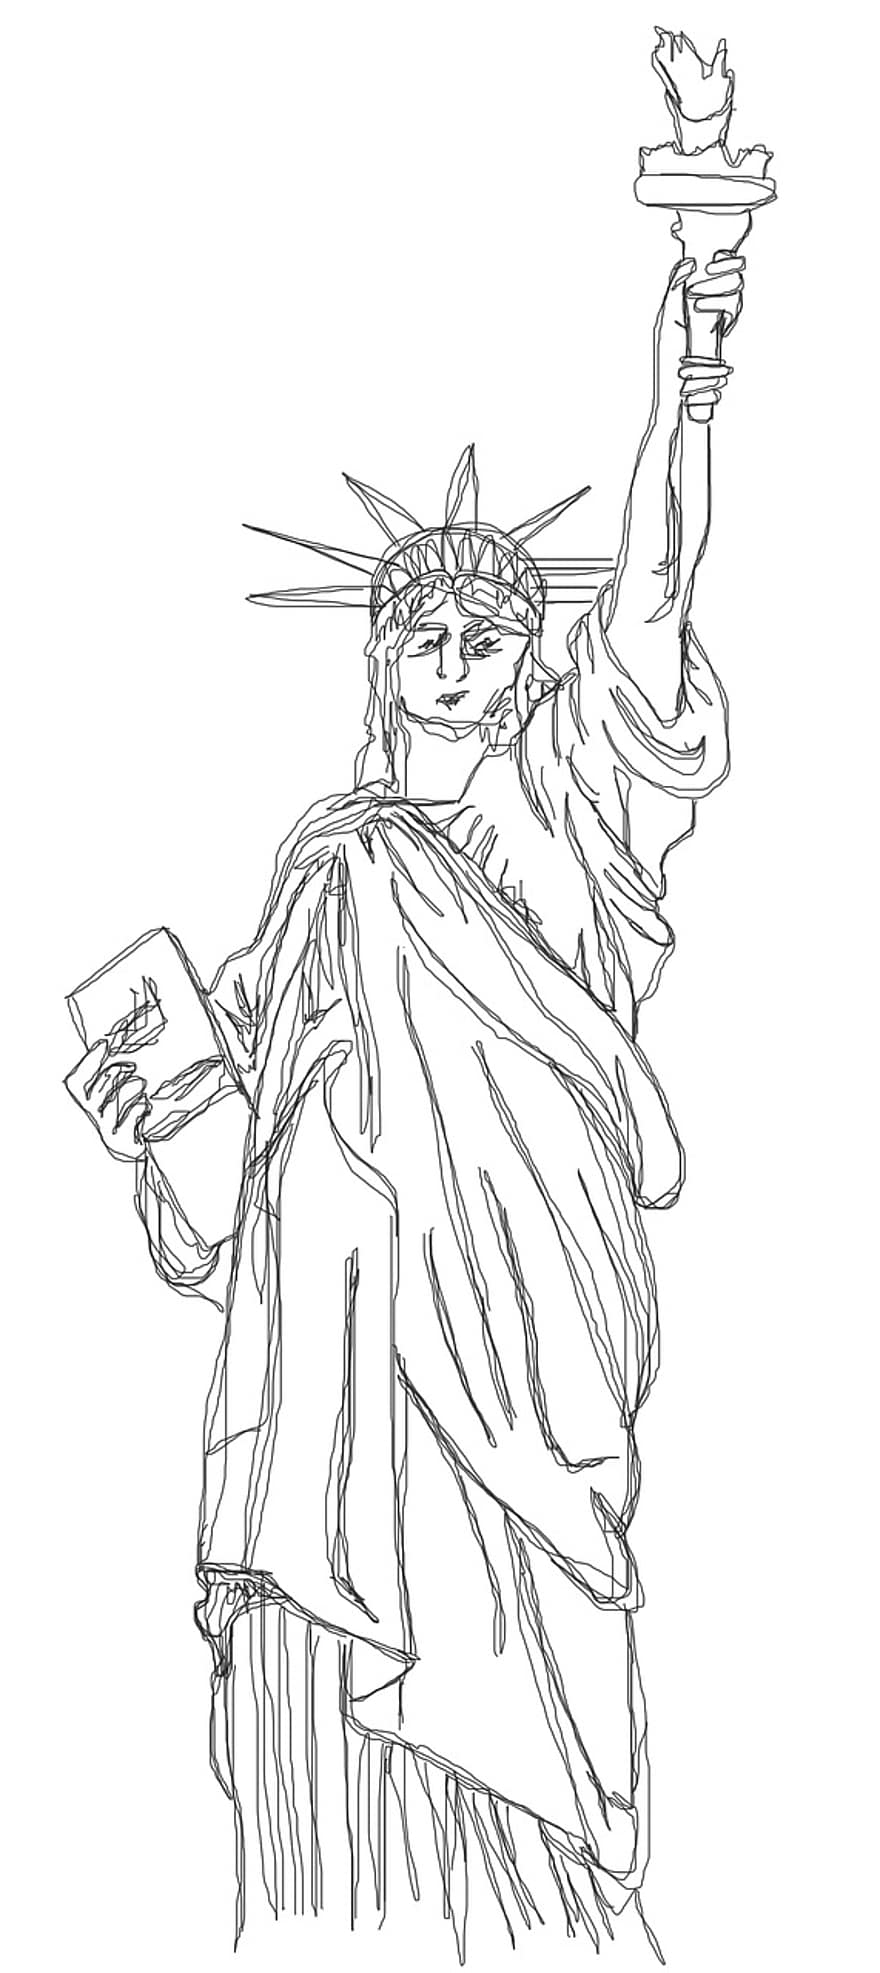 statua della Libertà, America, New York, statua, dom, simbolo, sei tu, altezza, torcia, scarabocchio, scarabocchi